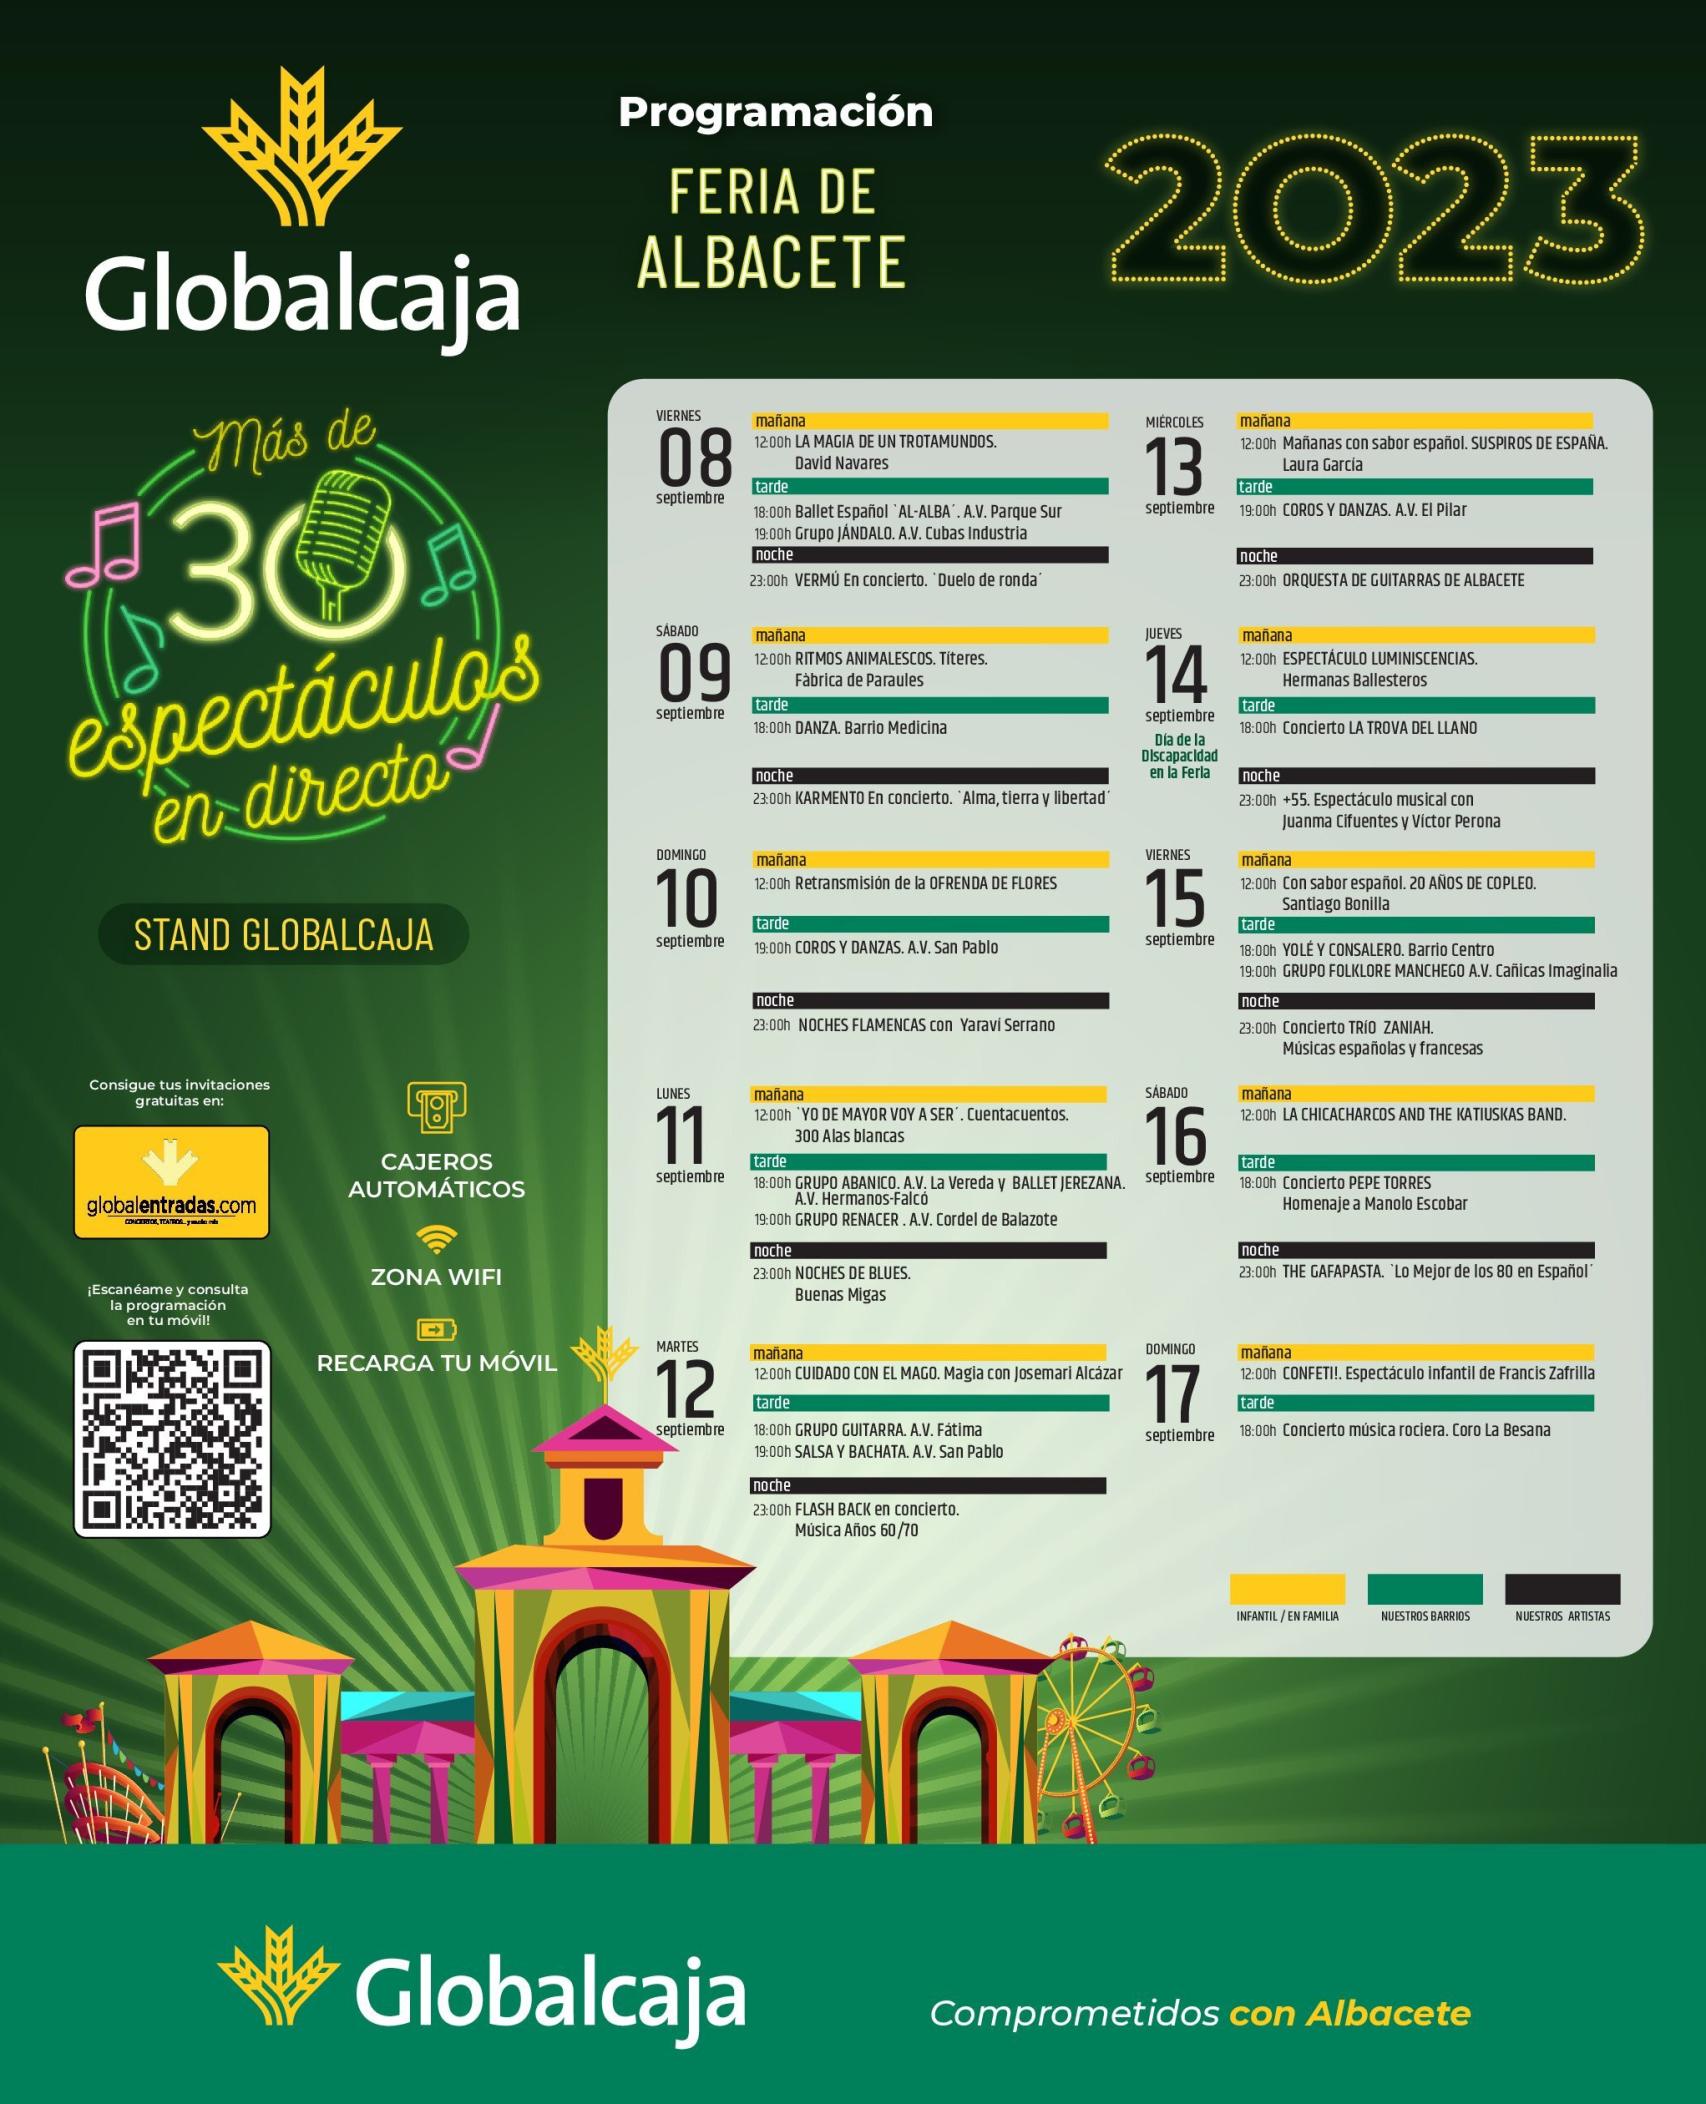 Programa de Globalcaja en la Feria de Albacete. Foto: Globalcaja.